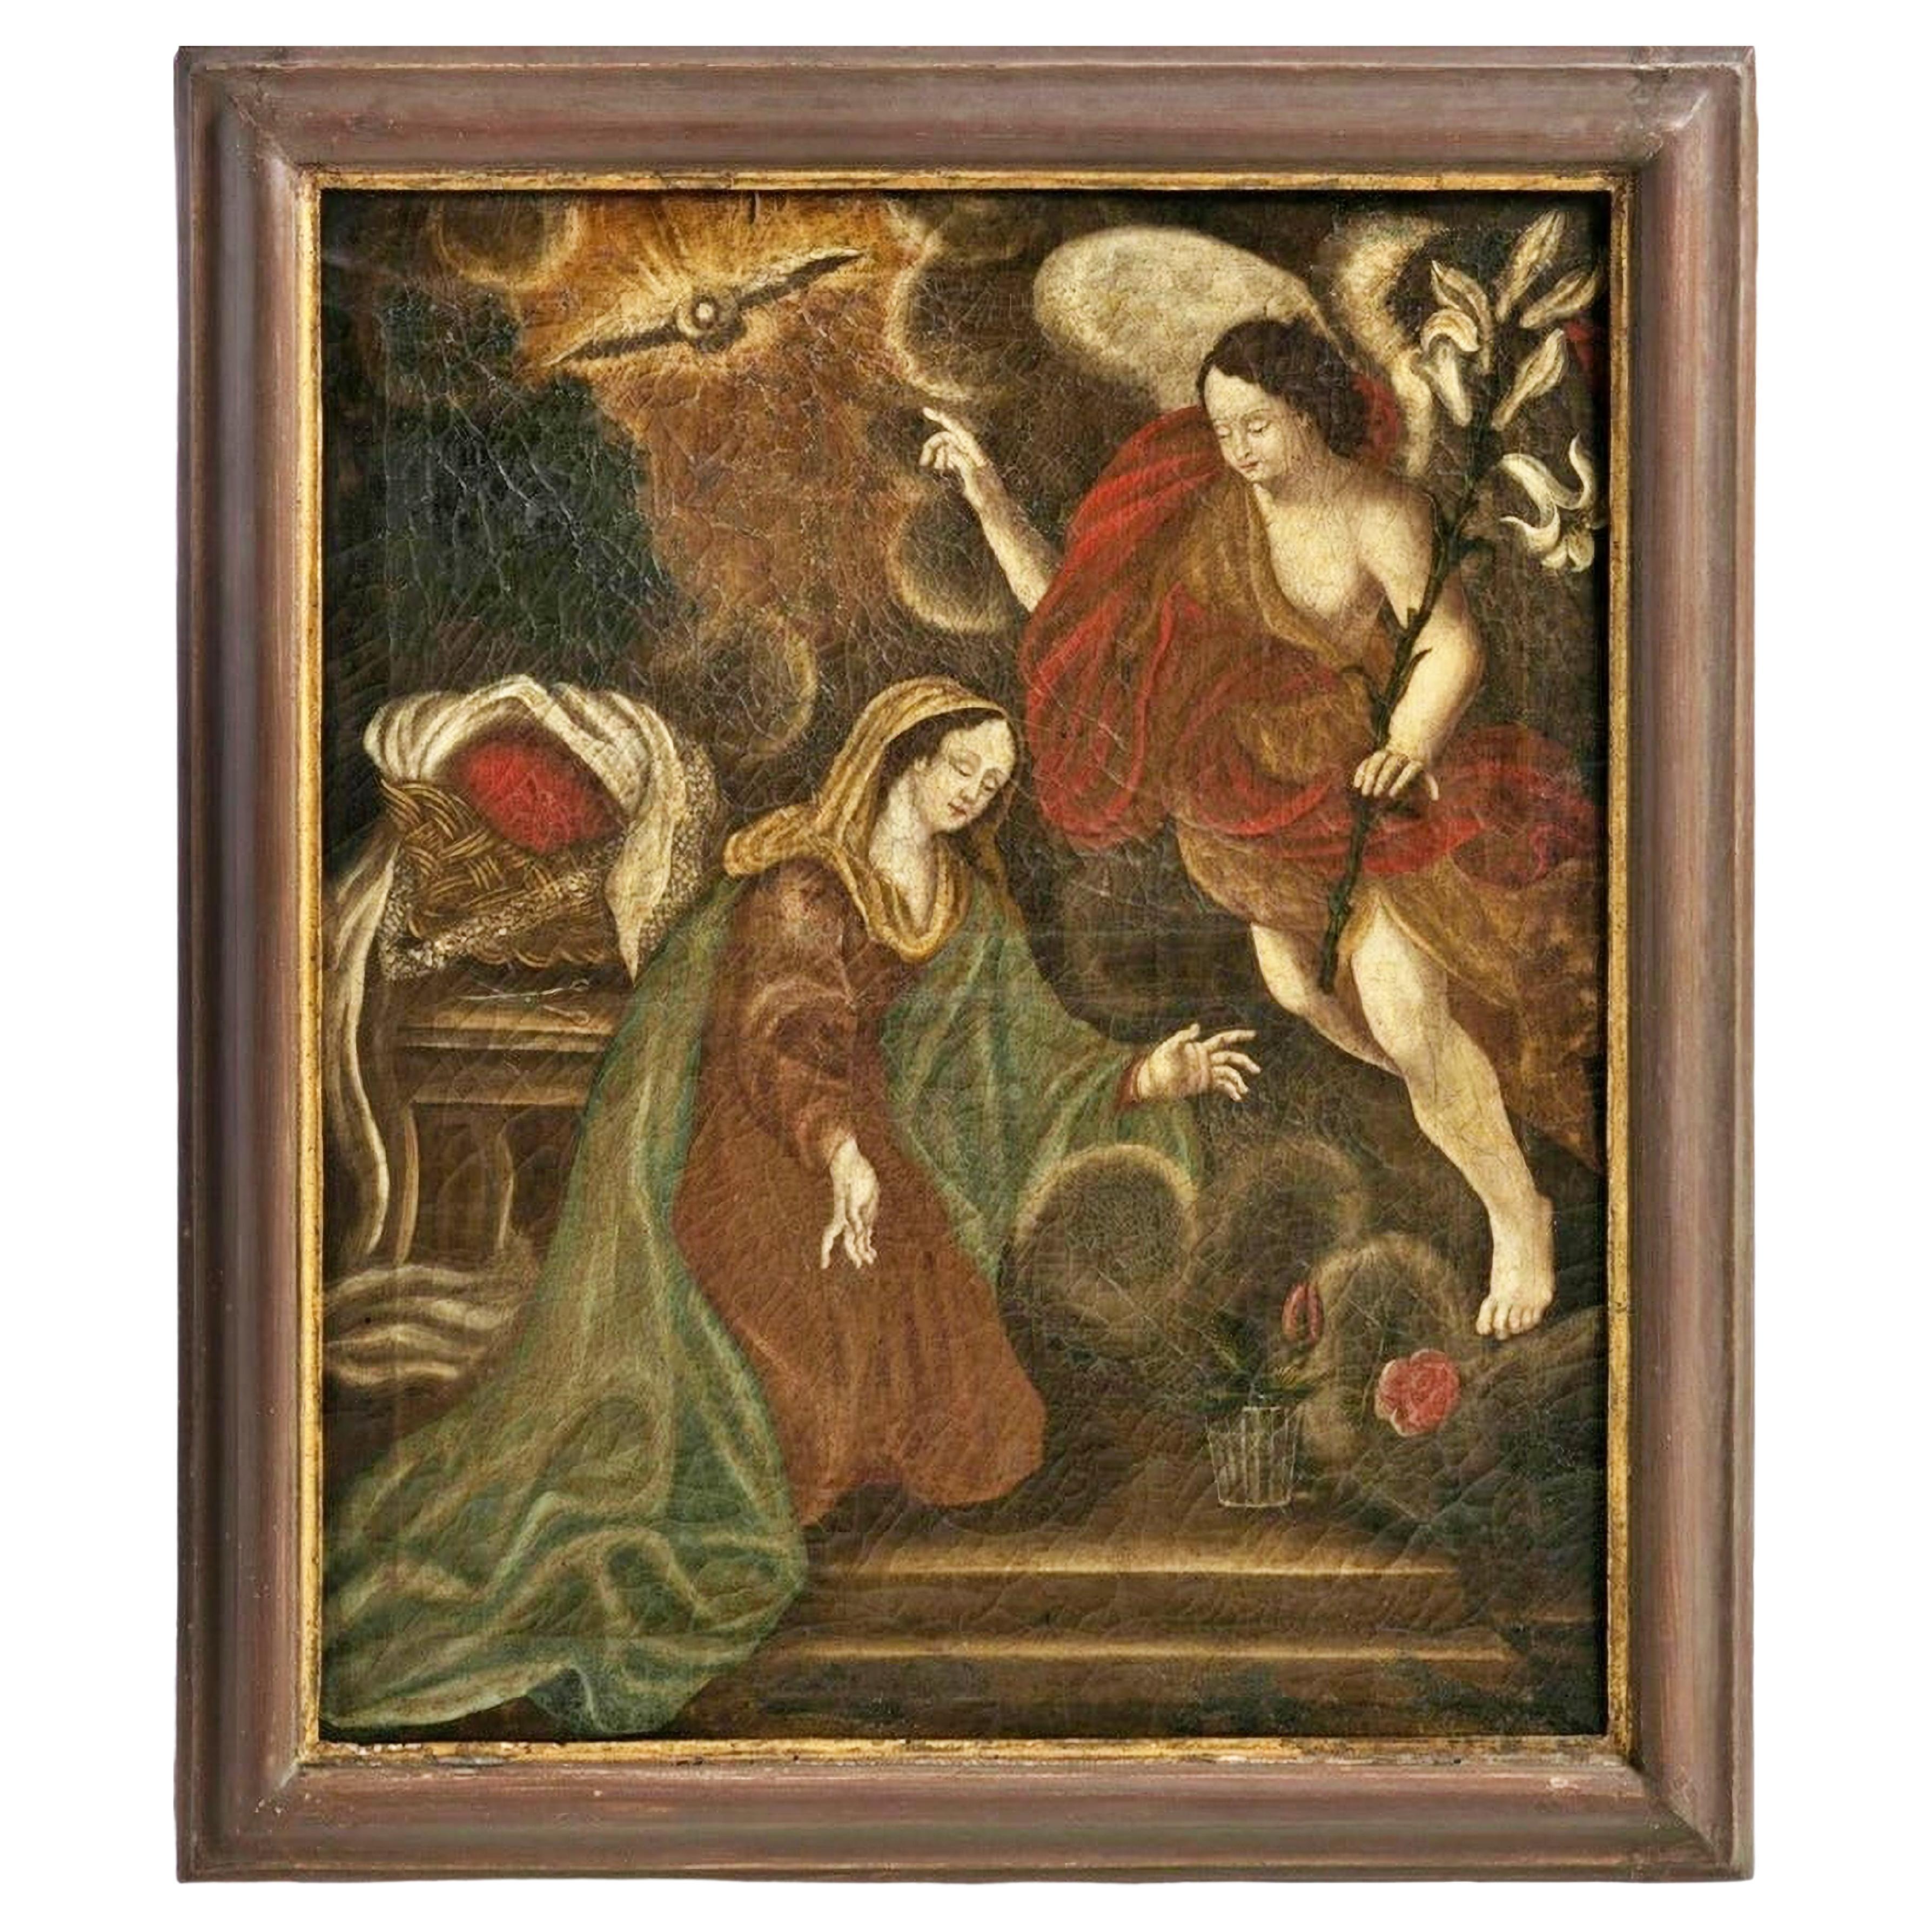 Announcement de l'école italienne huile sur toile, du 17ème siècle